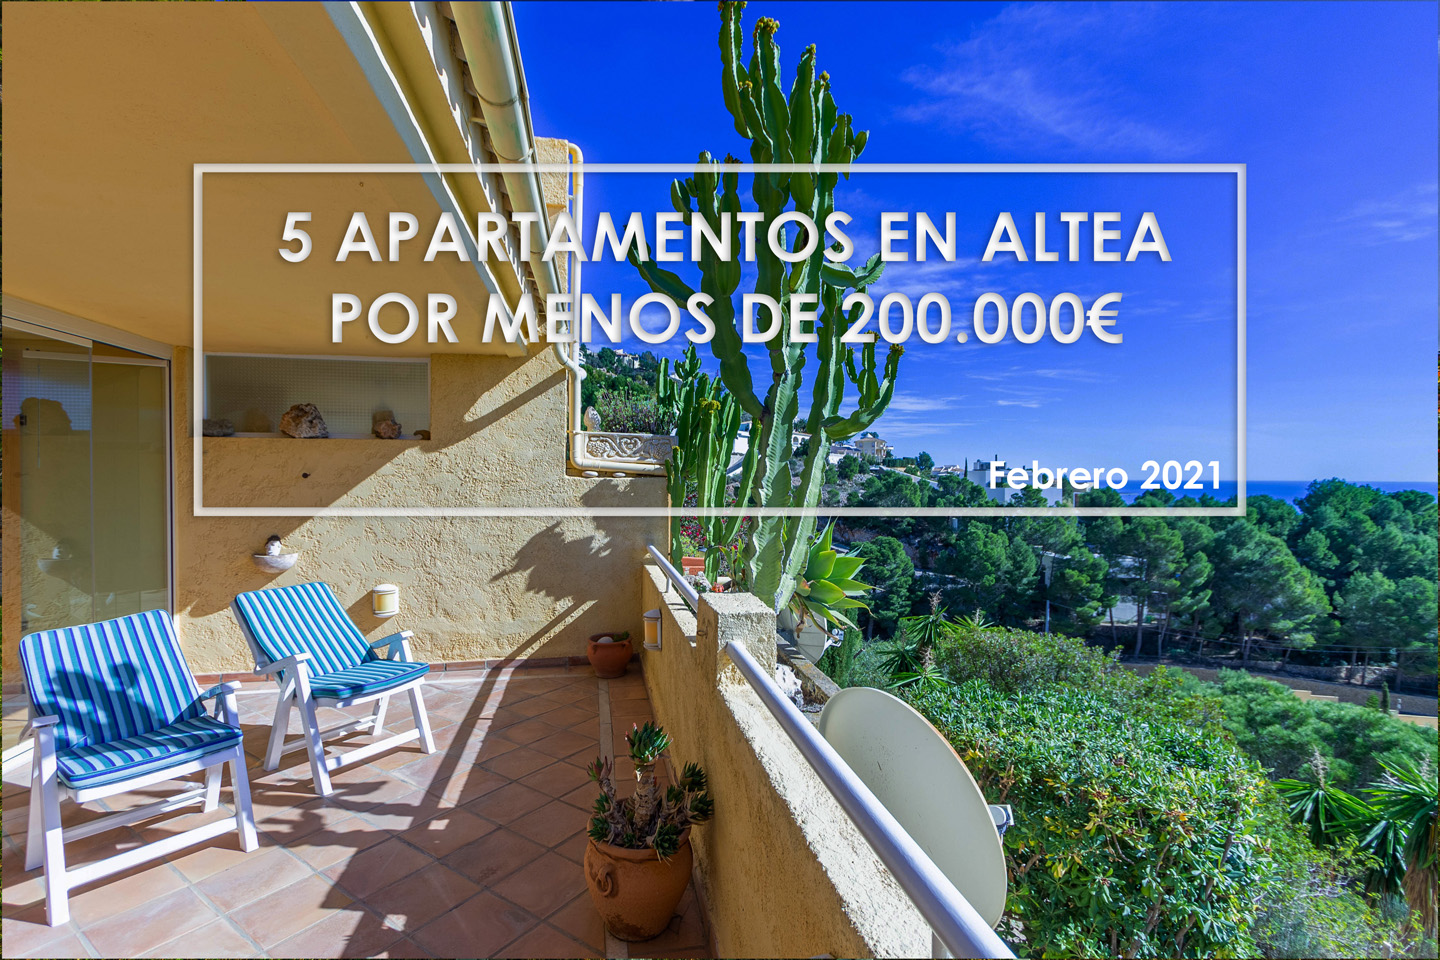 Los 5 apartamentos en Altea por menos de 200.000€ de Febrero 2021